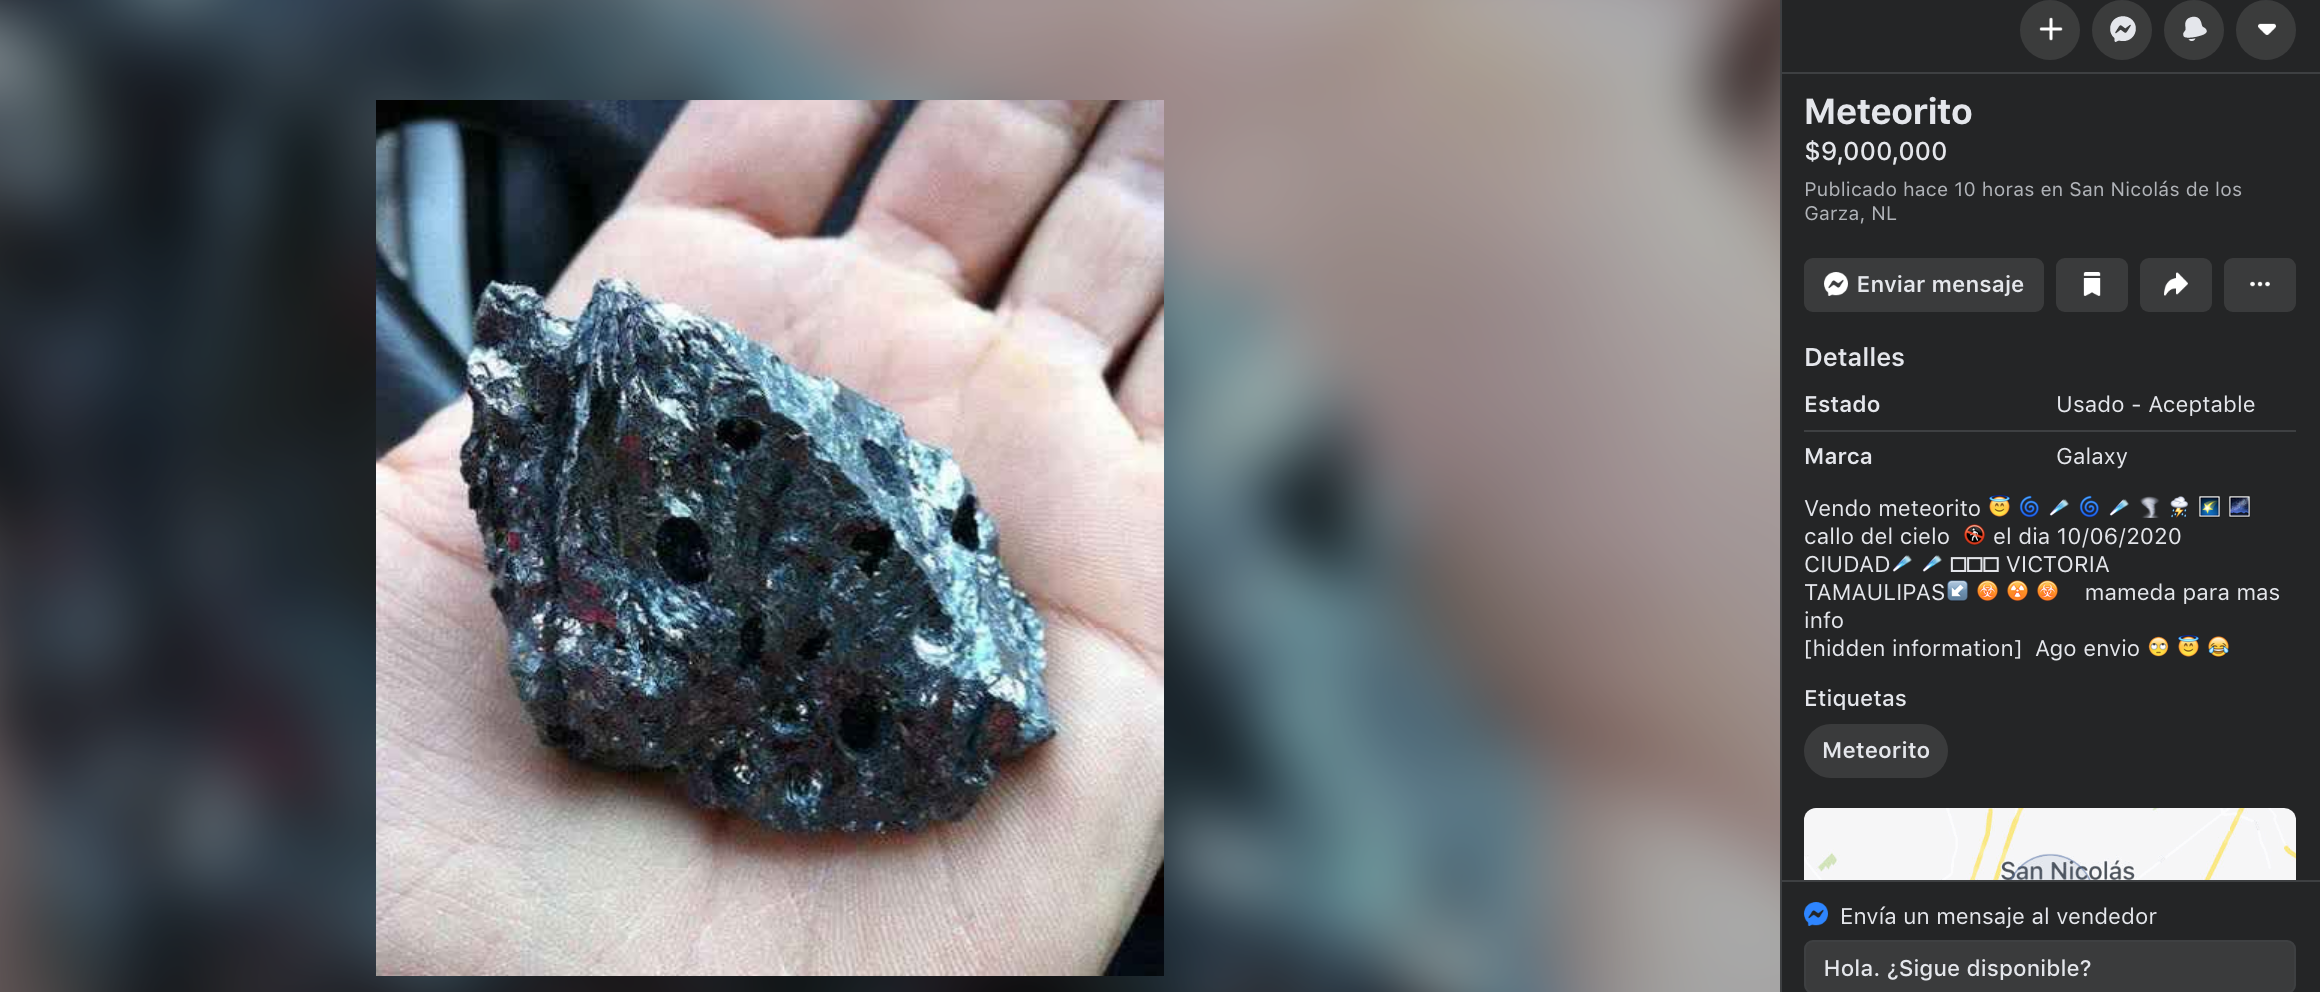 Mentalidad de tiburón: Venden en internet partes del meteorito que cayó en Tamaulipas